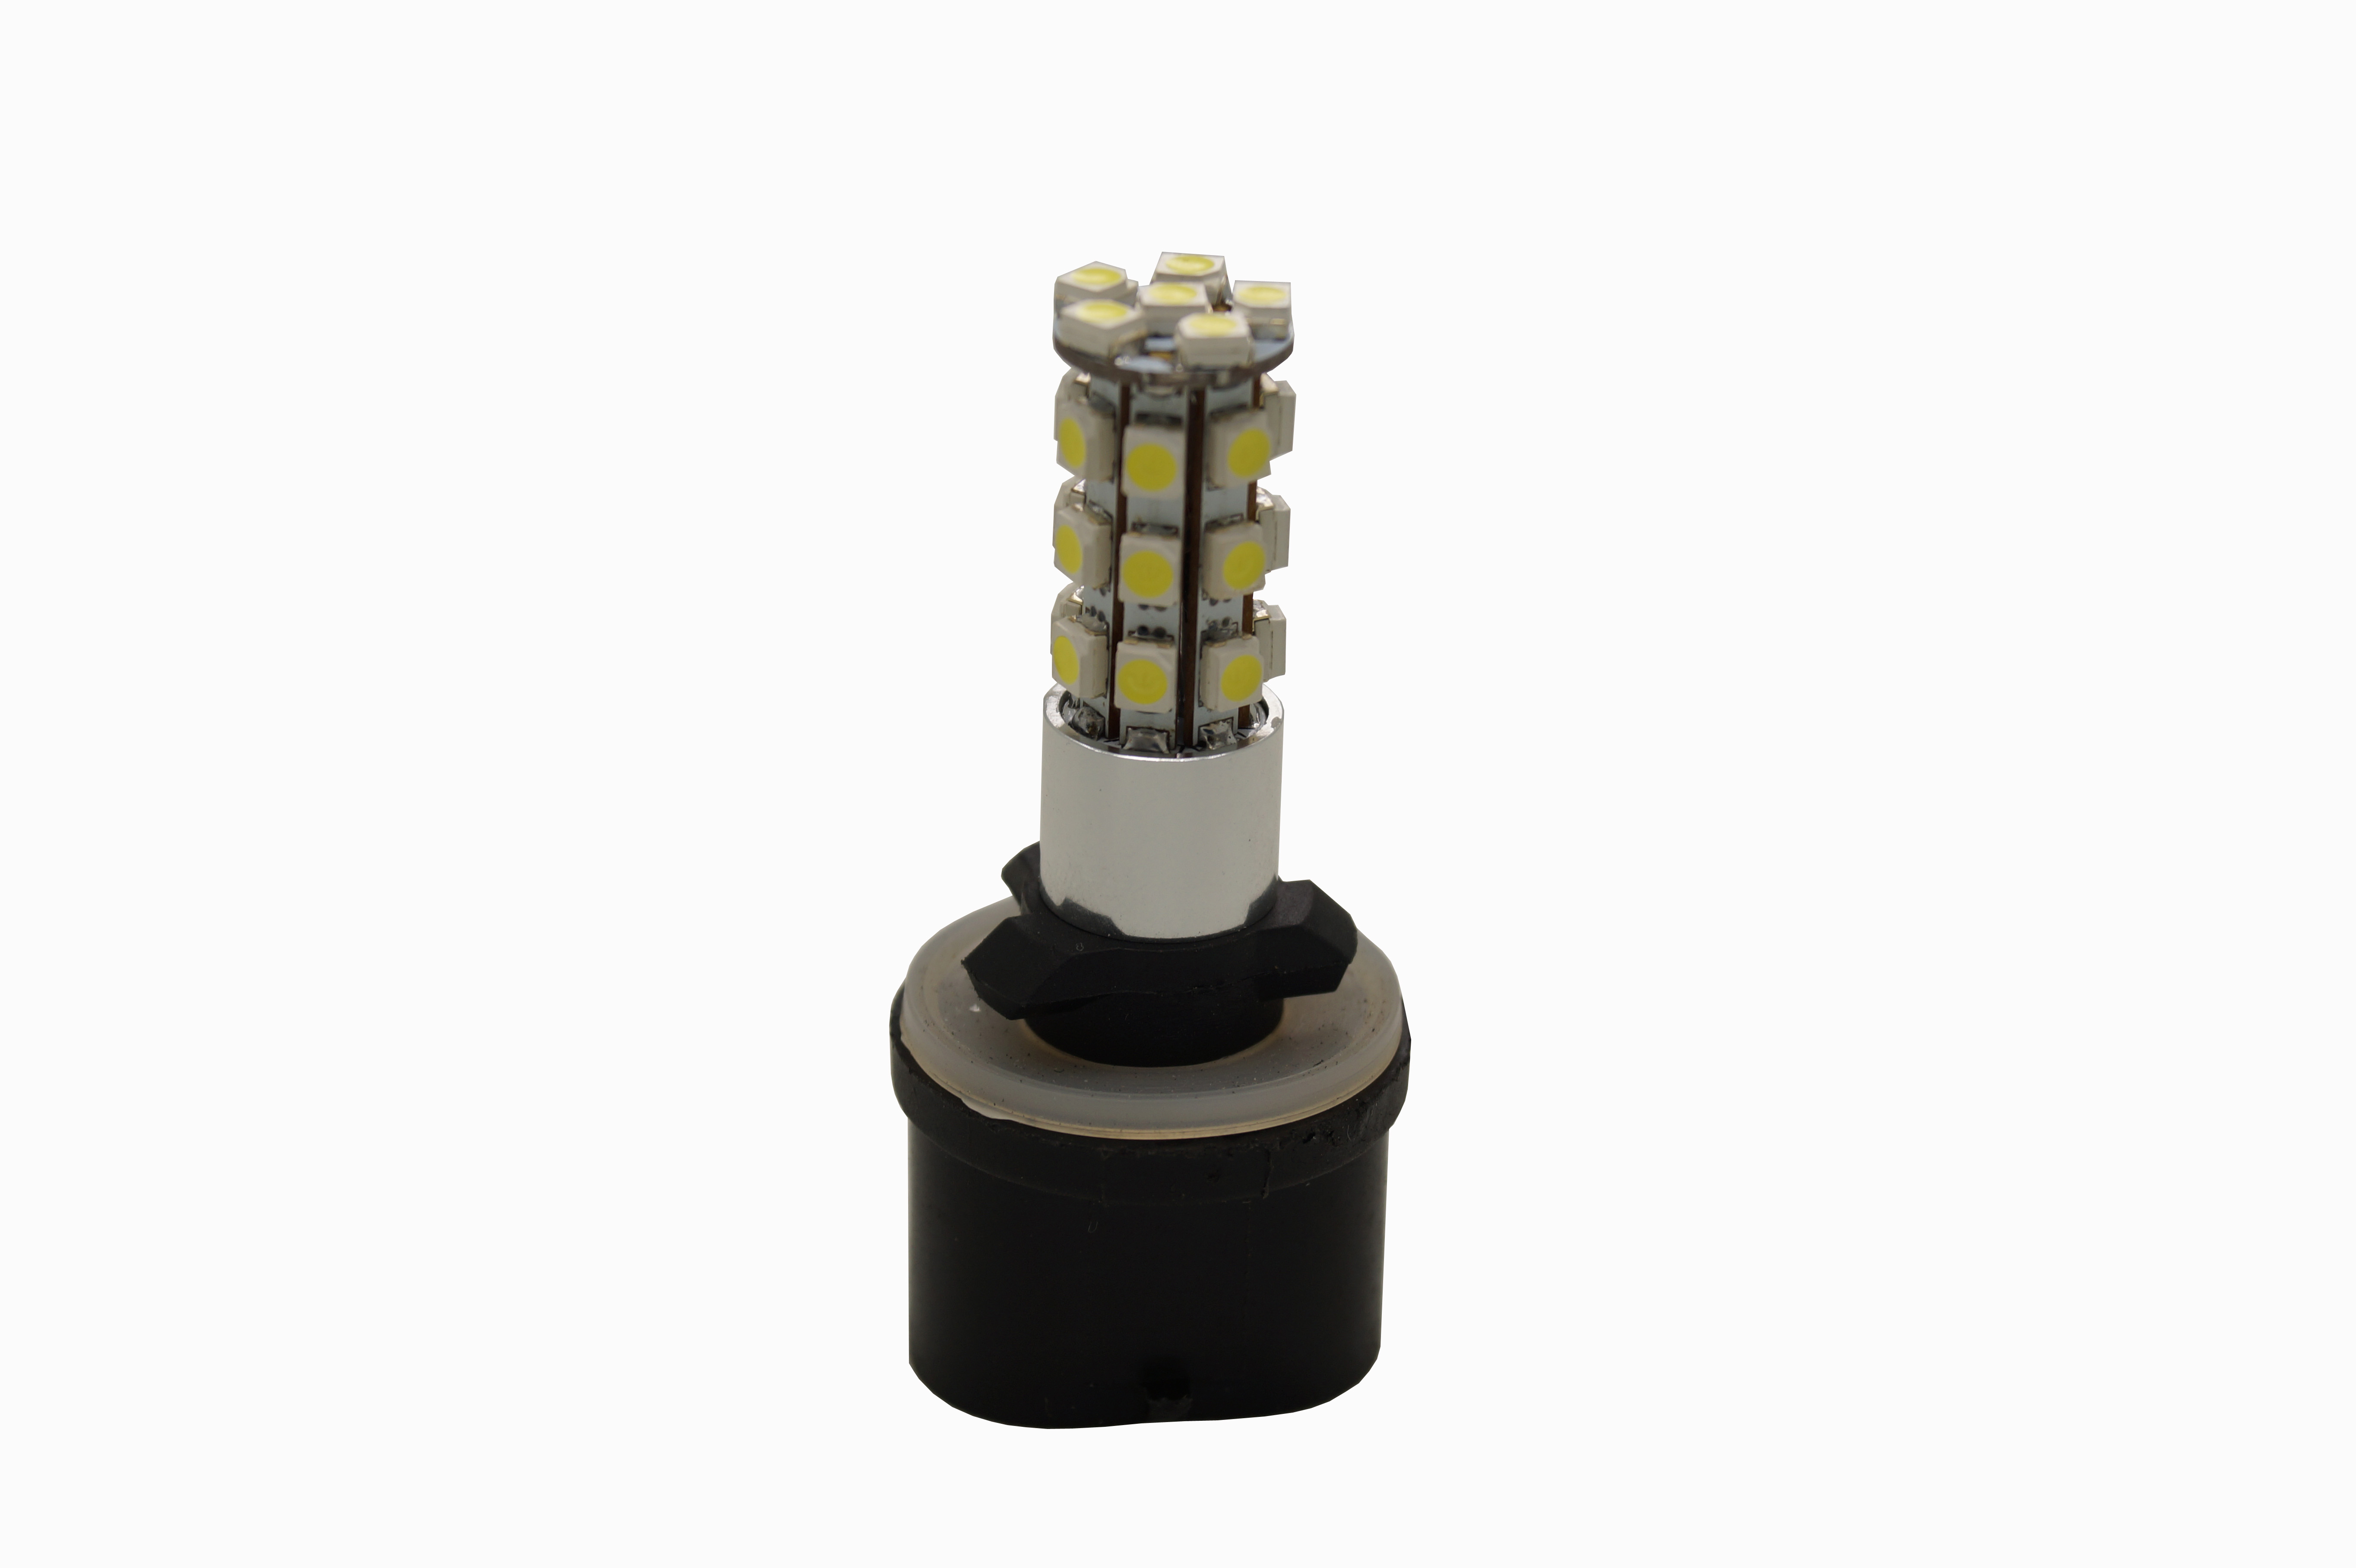 60mm helle LED-Nebelbirne für Tagfahrlicht oder Nebelscheinwerfer